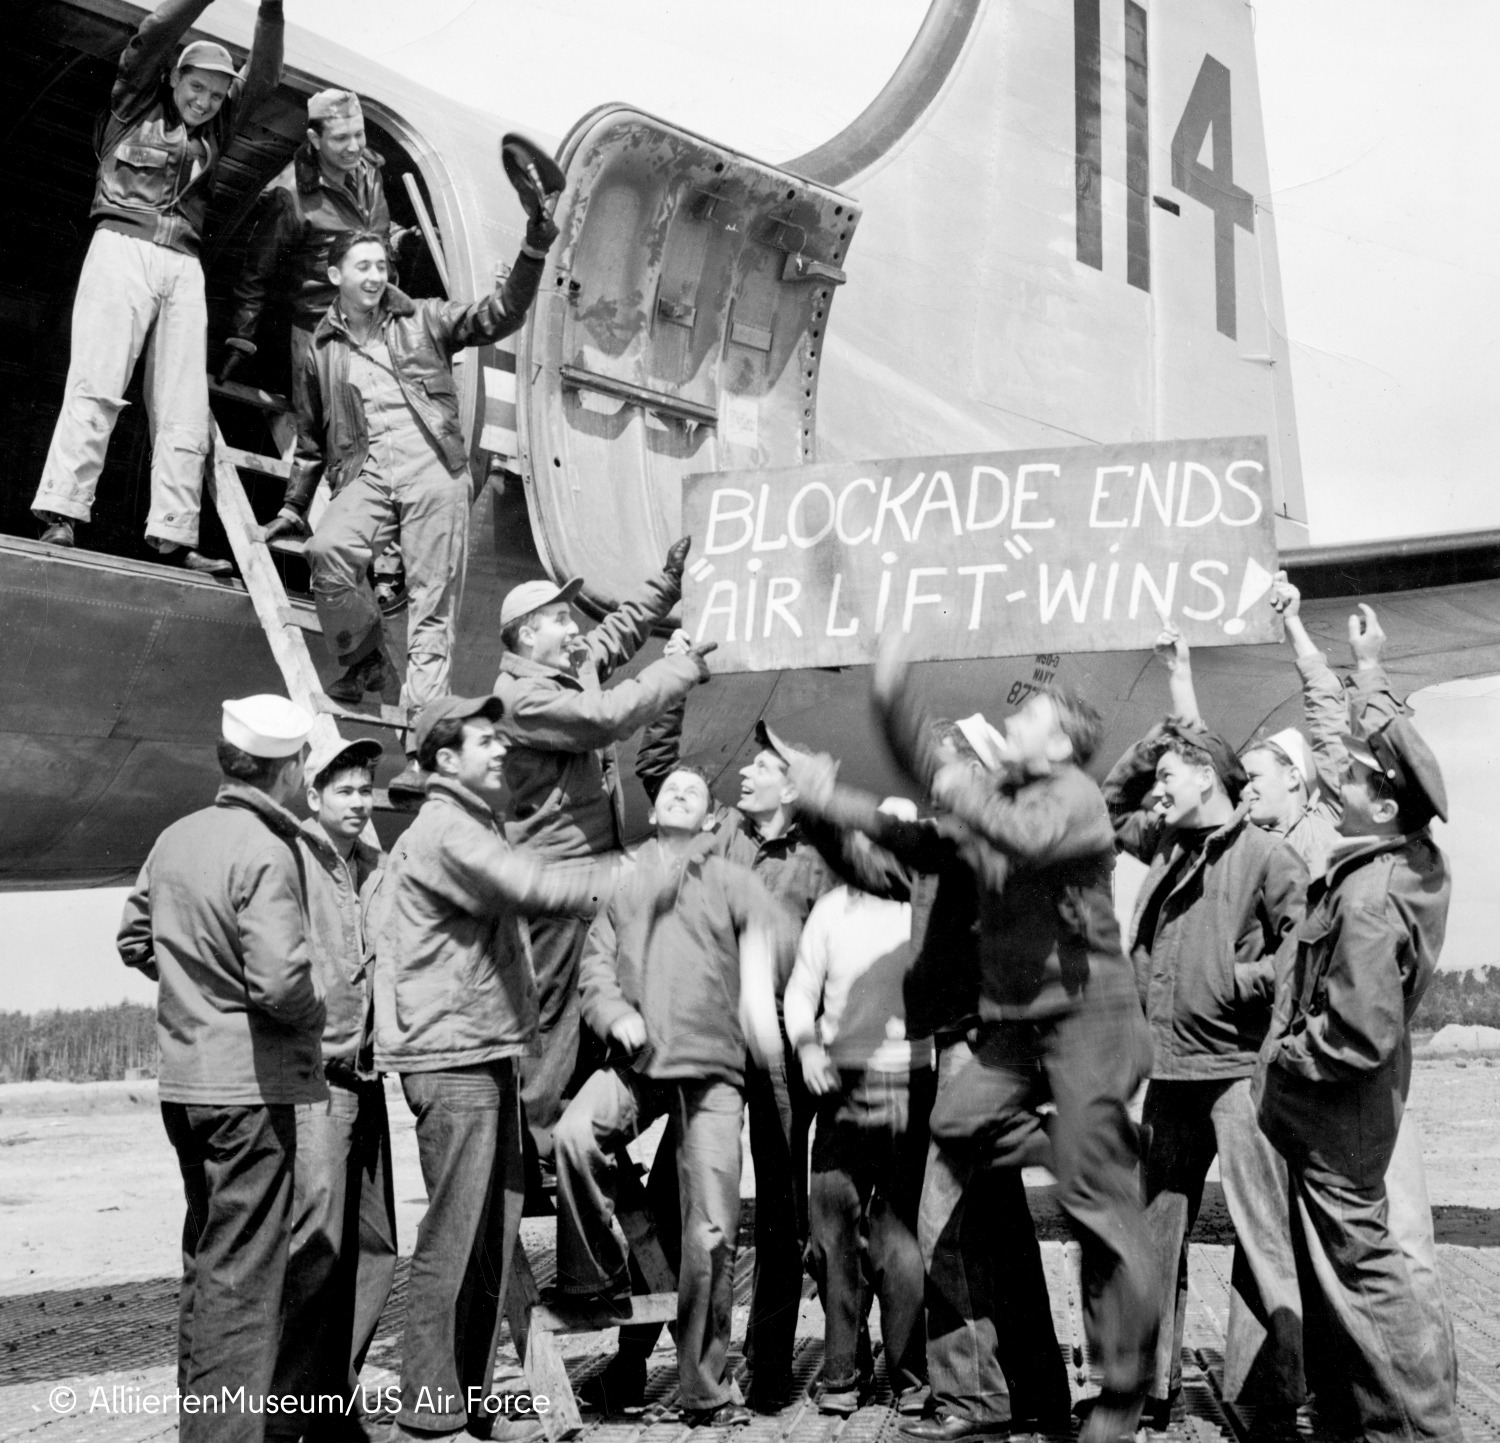 Viele Männer halten ein Schild hoch mit der Aufschrift "Blockade ends air lift wins!"